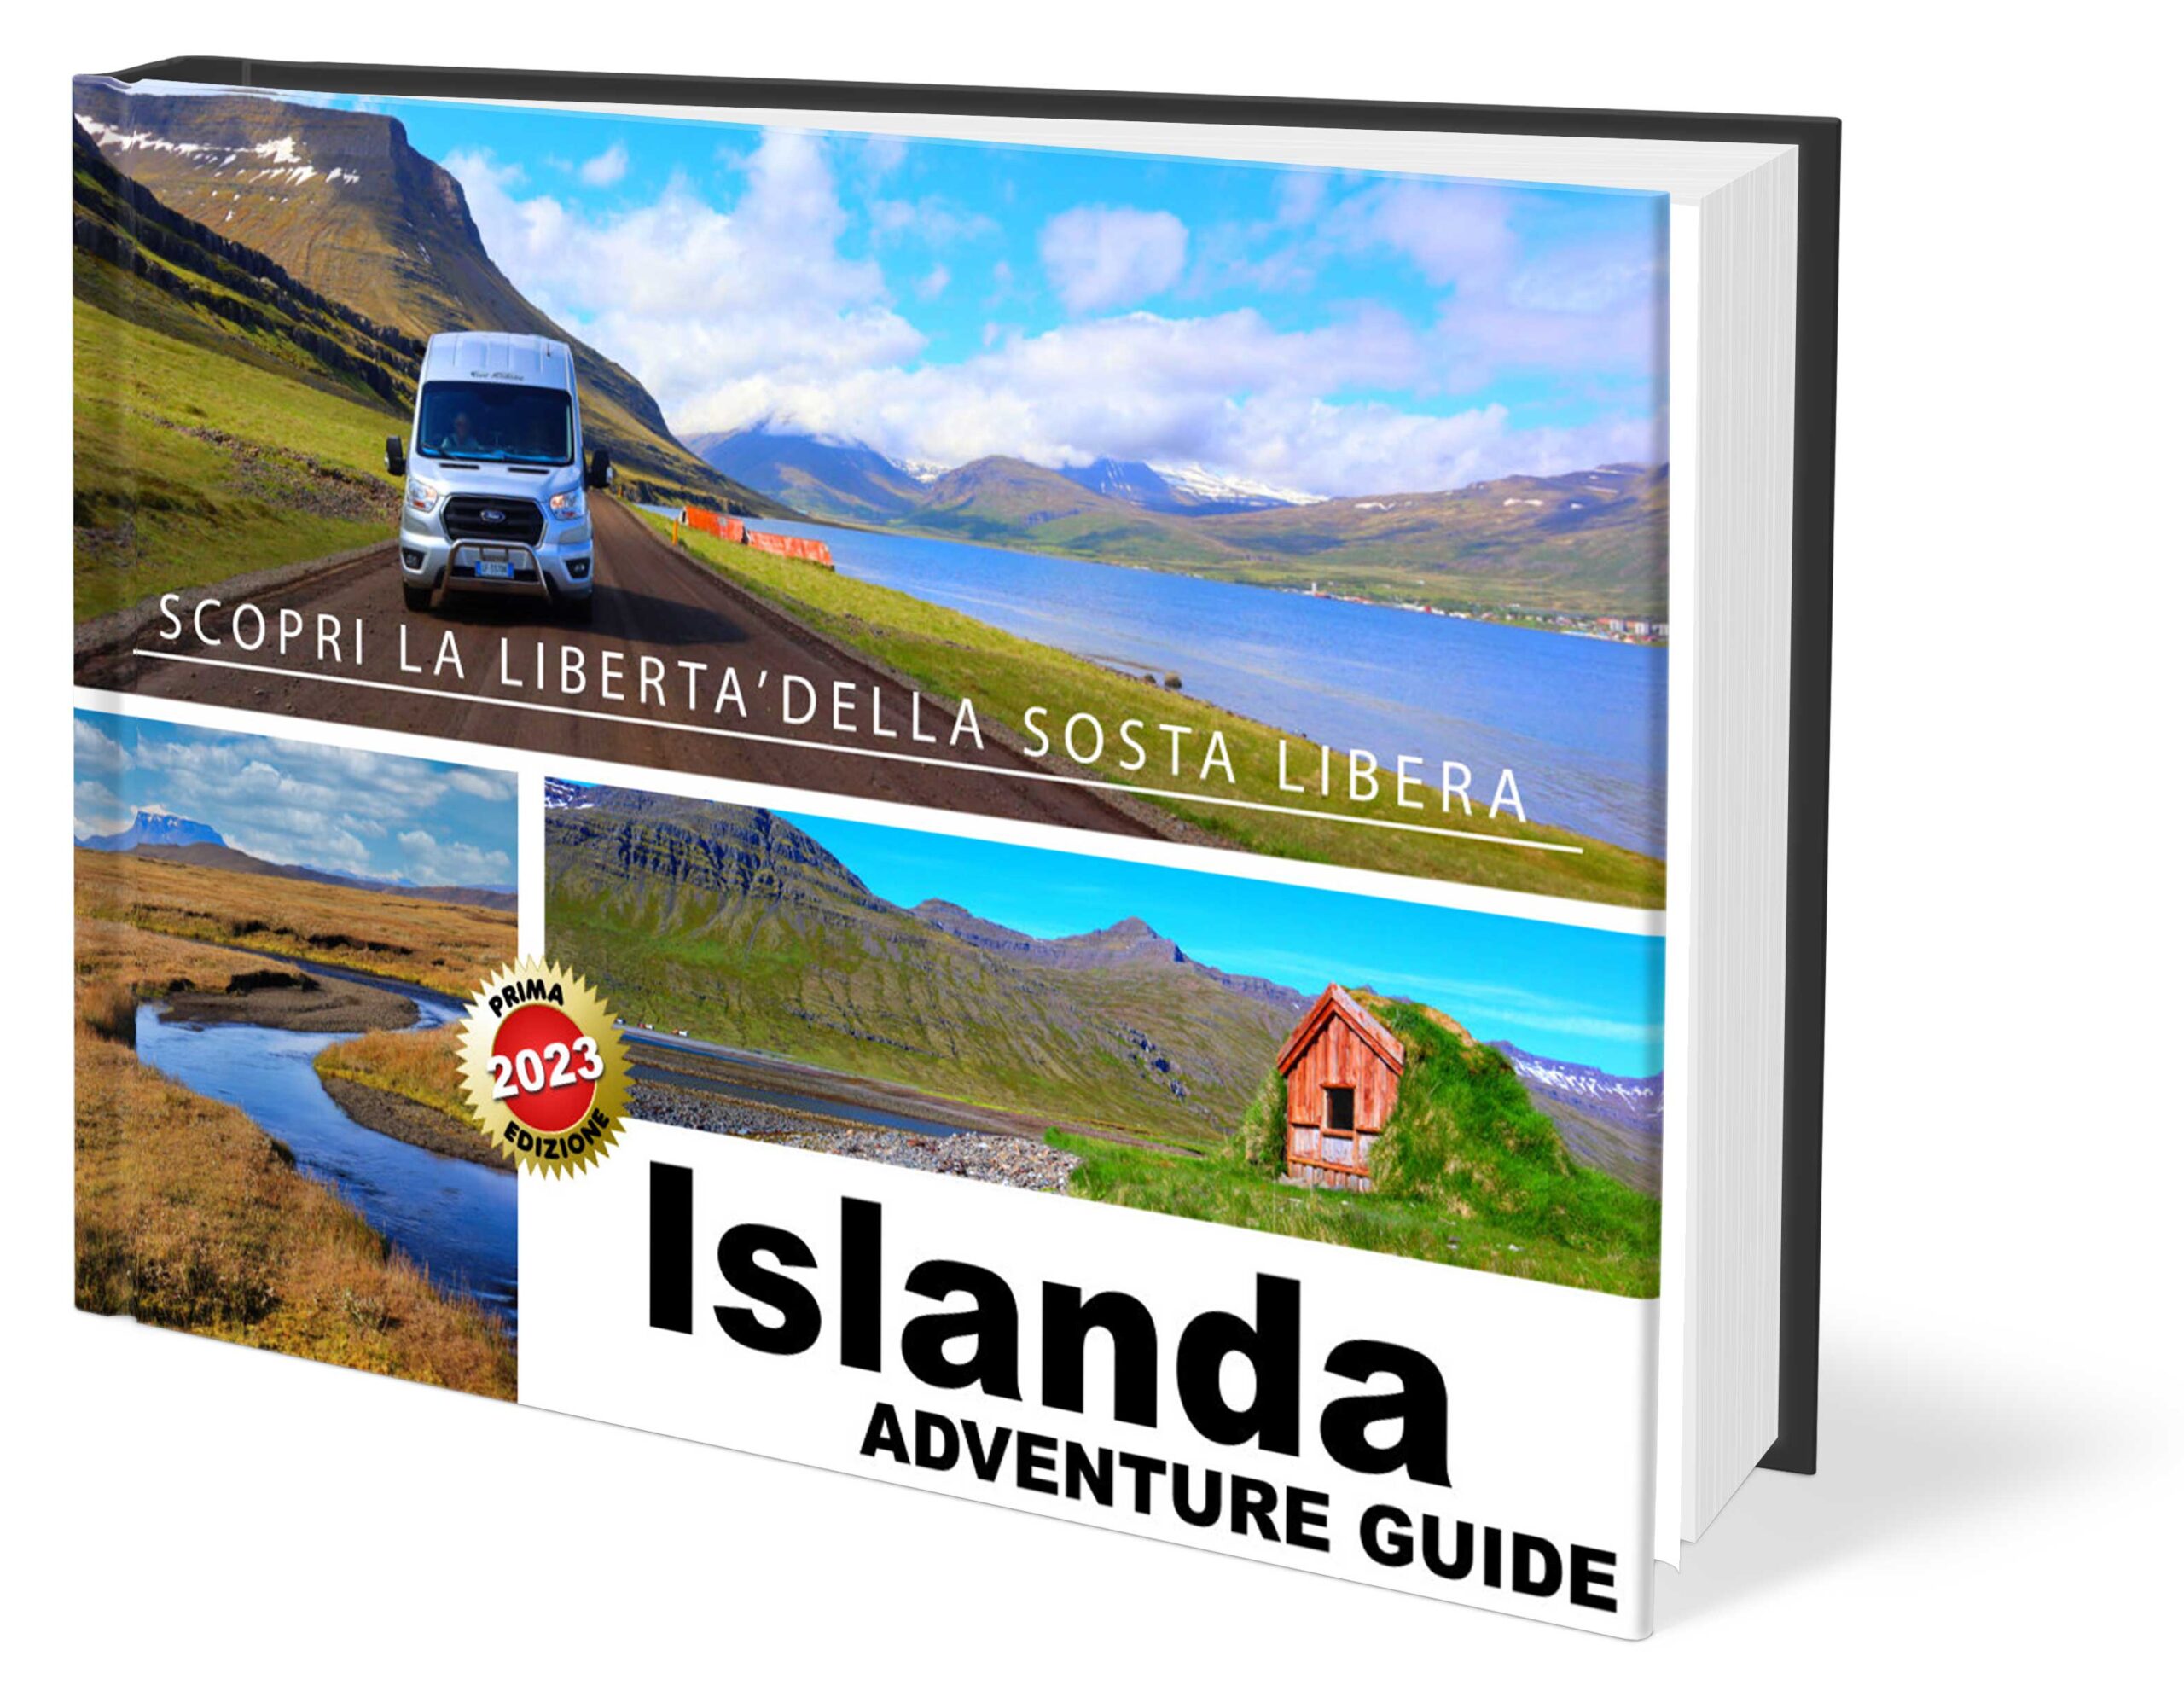 ISLANDA – La prima guida alla sosta libera in camper e van – ORMEsulMONDO